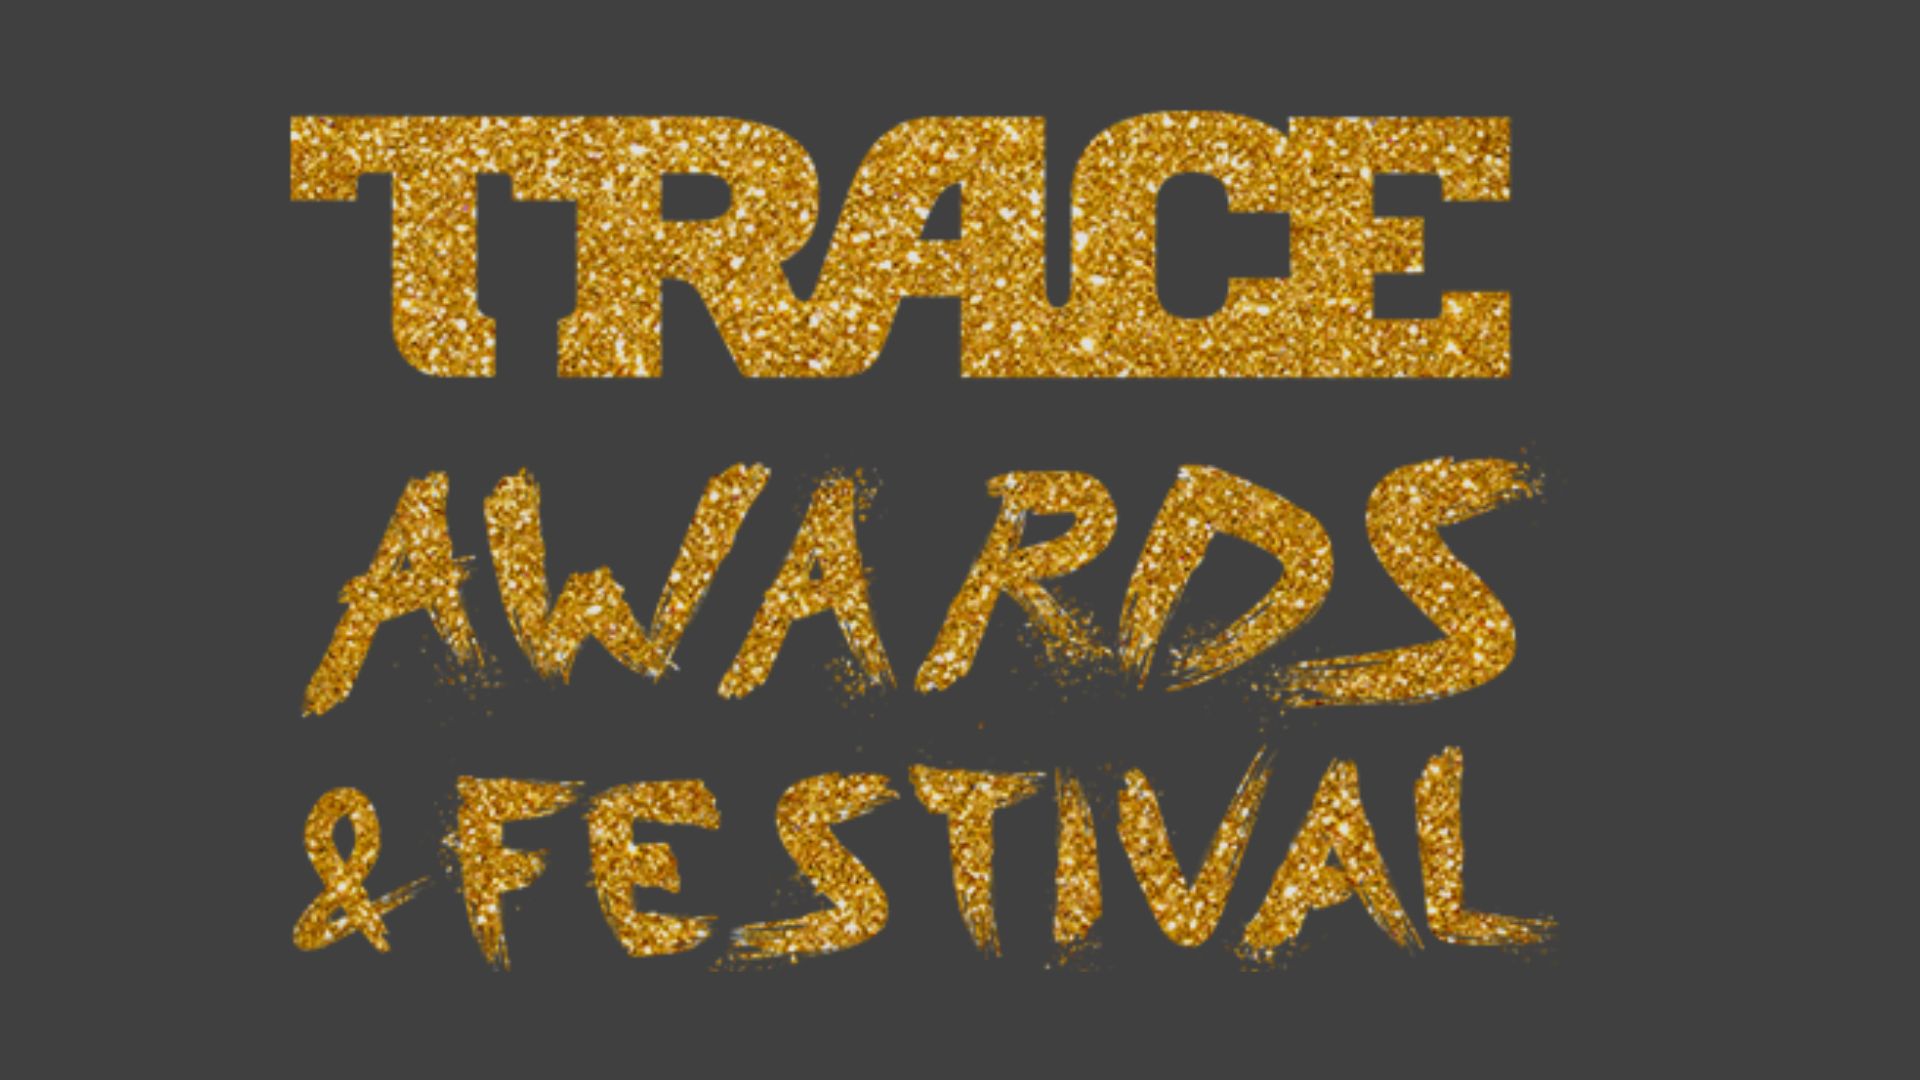 Trace Awards